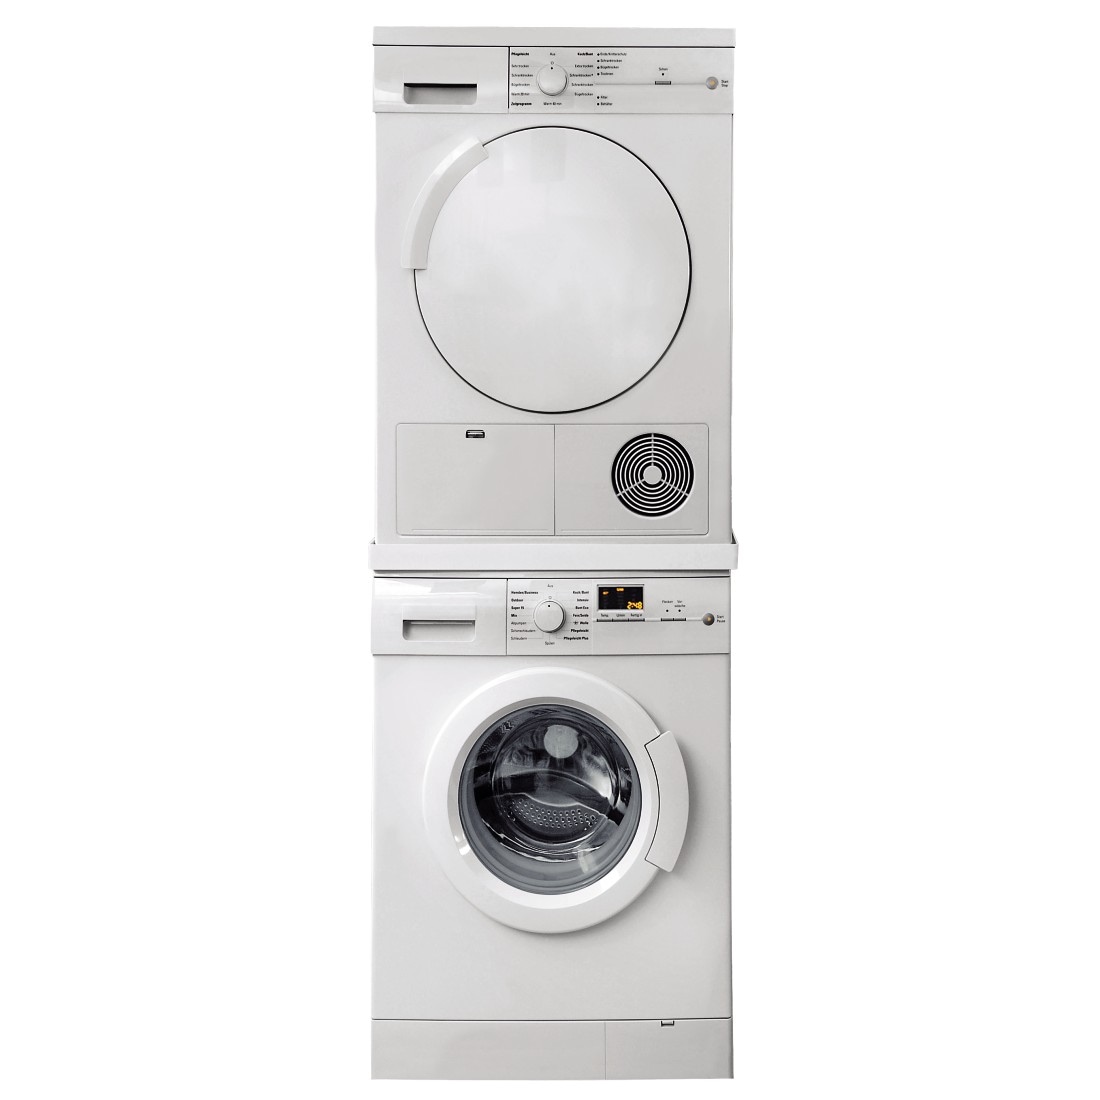 Xavax Zwischenbaurahmen »Zwischenbaurahmen für Waschmaschinen/Trockner, 60 x 60 cm«, 60 x 60 cm, Zwischenbausatz, Metall